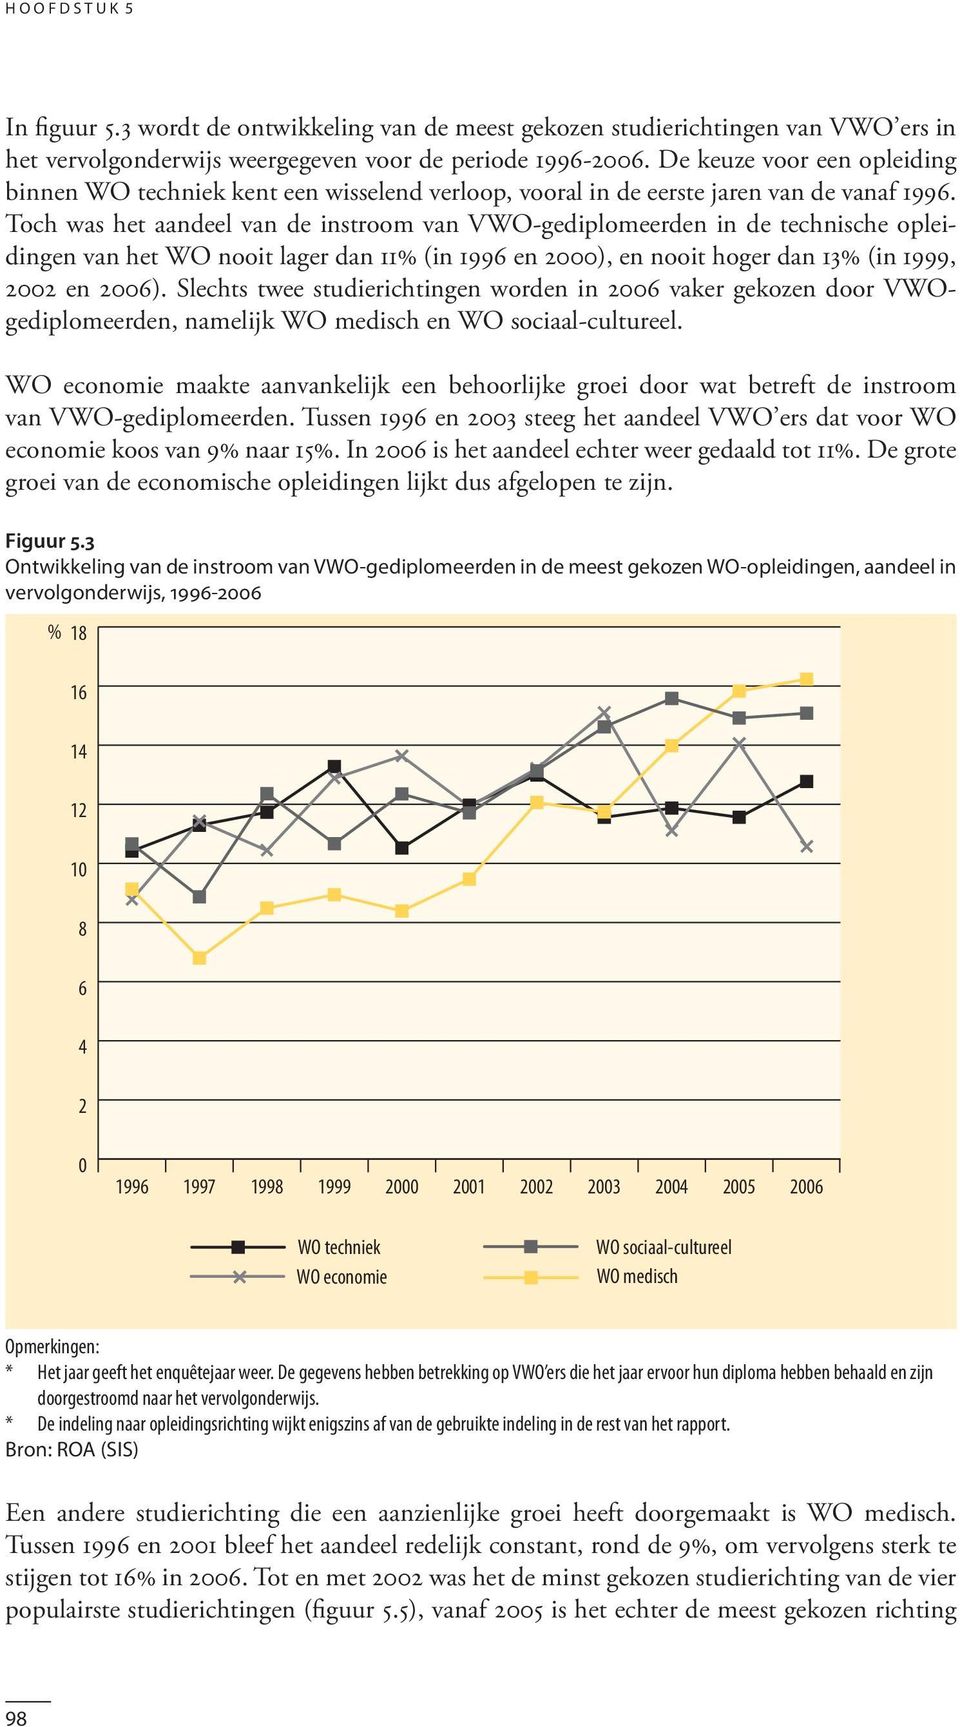 Toch was het aandeel van de instroom van VWO-gediplomeerden in de technische opleidingen van het WO nooit lager dan 11% (in 1996 en 2000), en nooit hoger dan 13% (in 1999, 2002 en 2006).